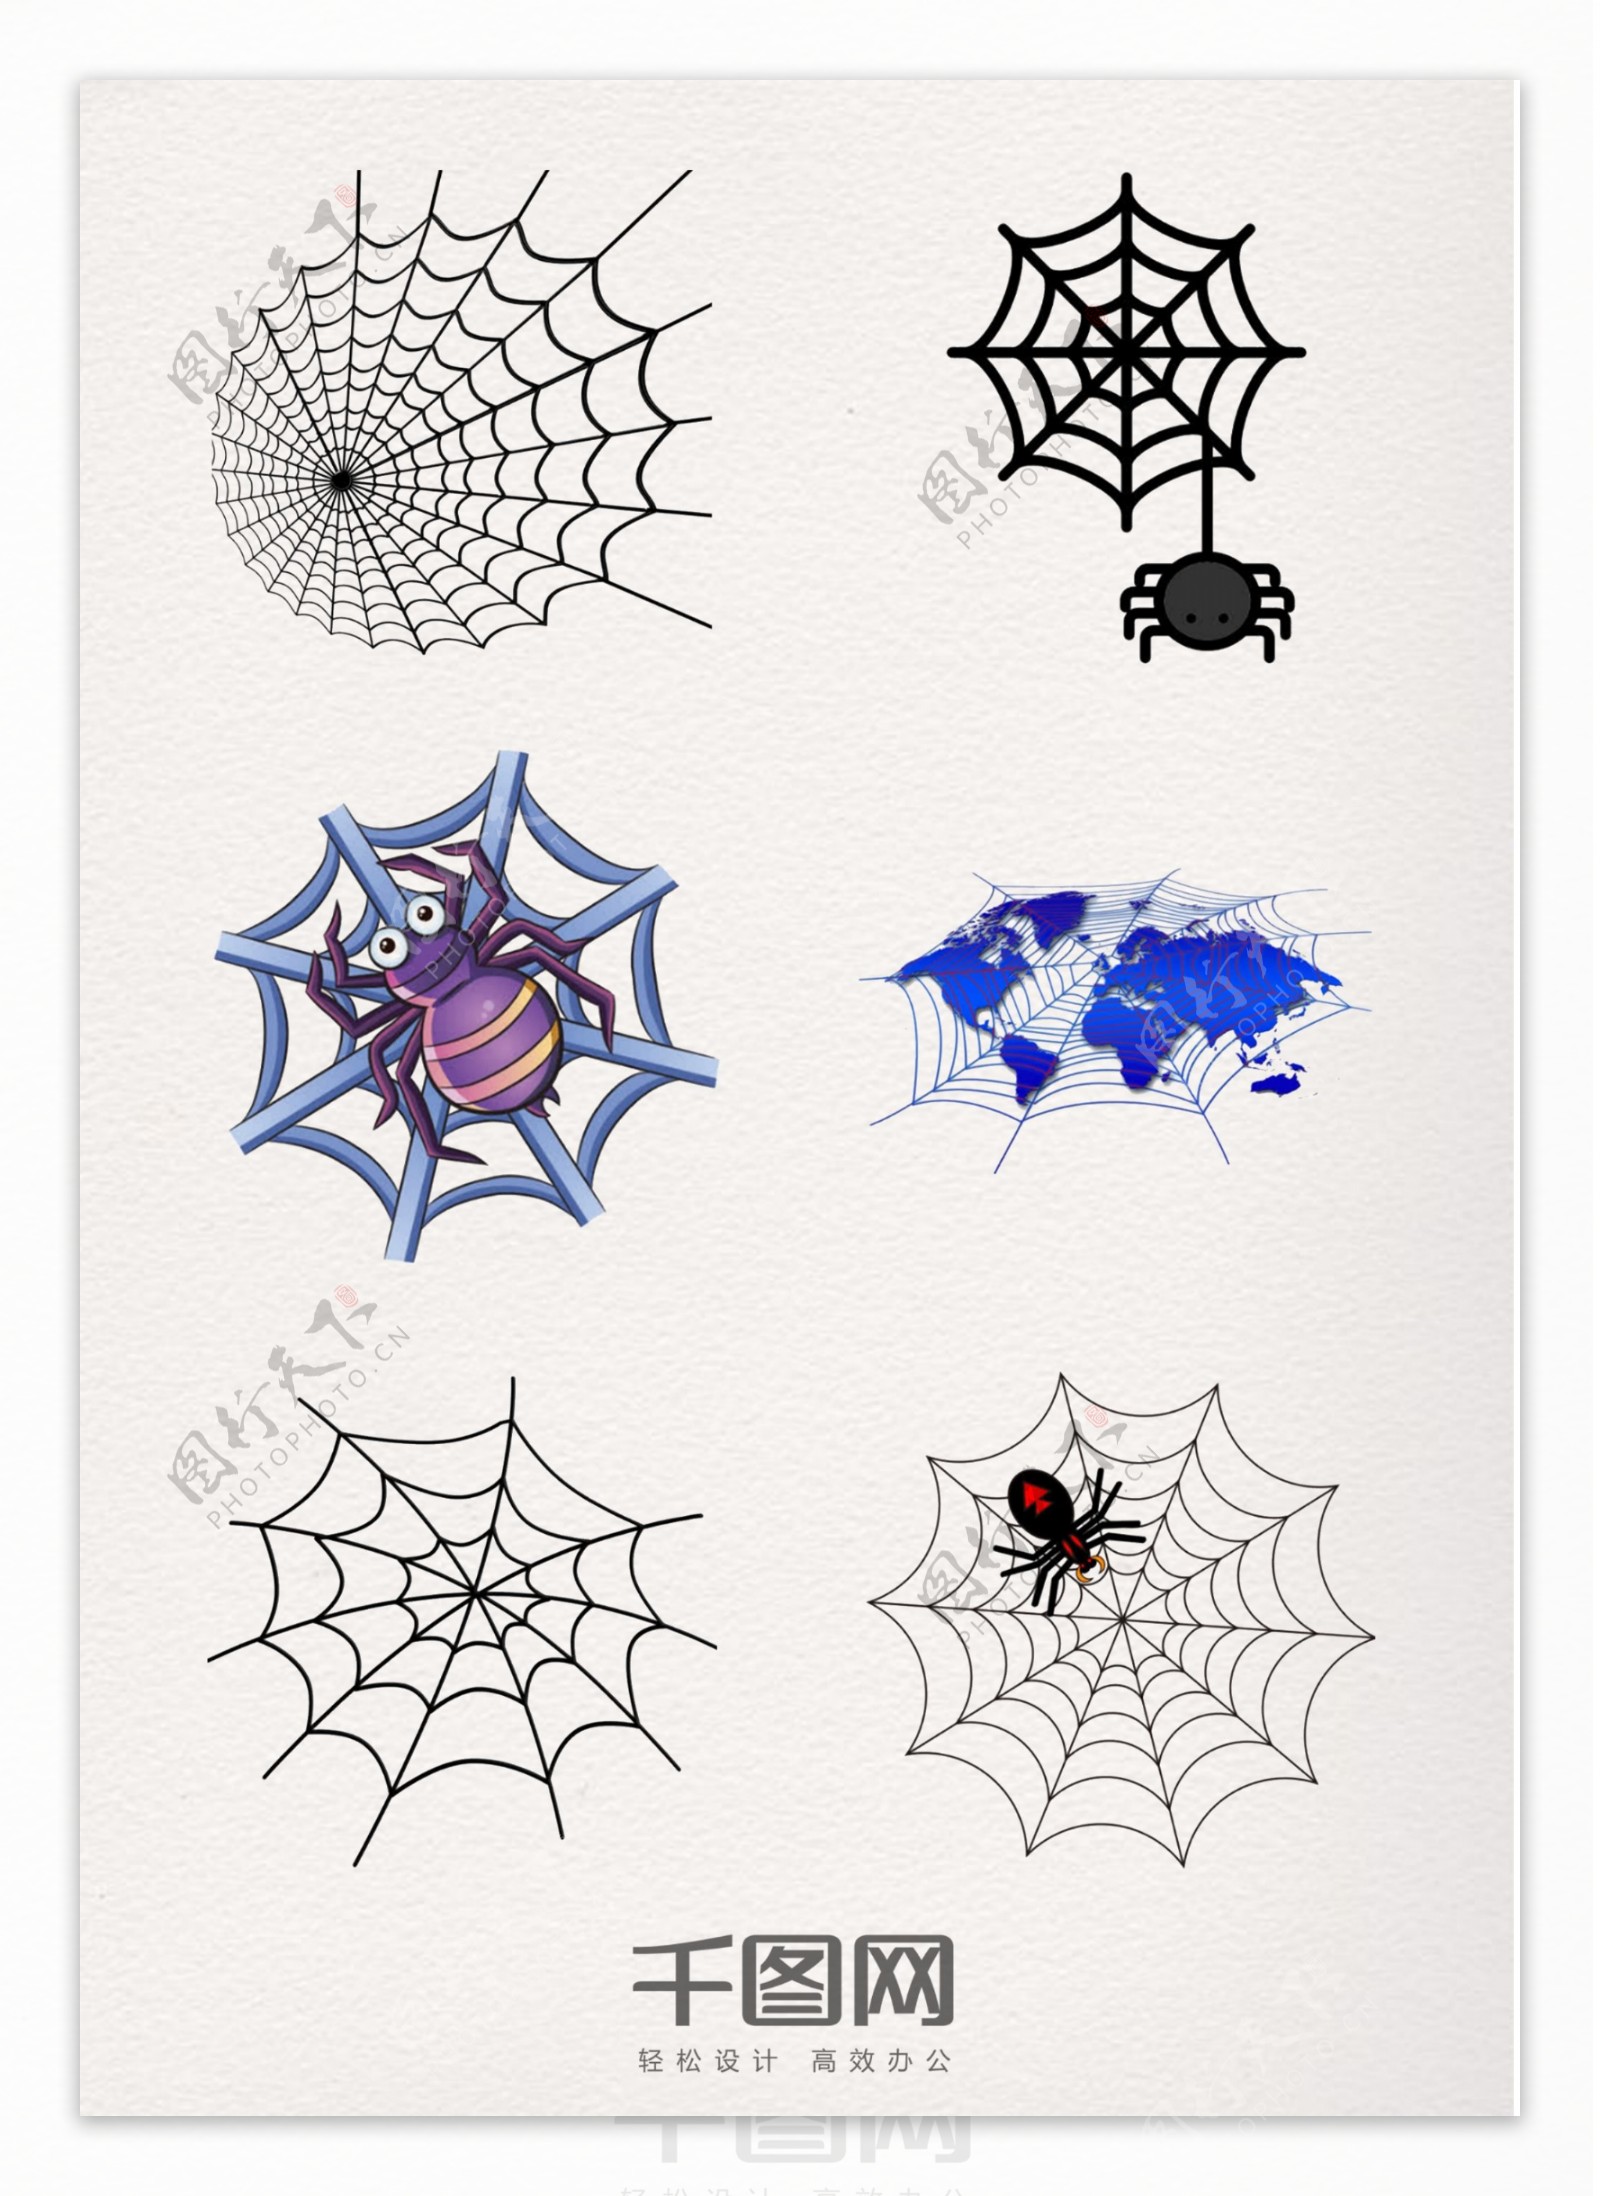 装饰元素图案蜘蛛网